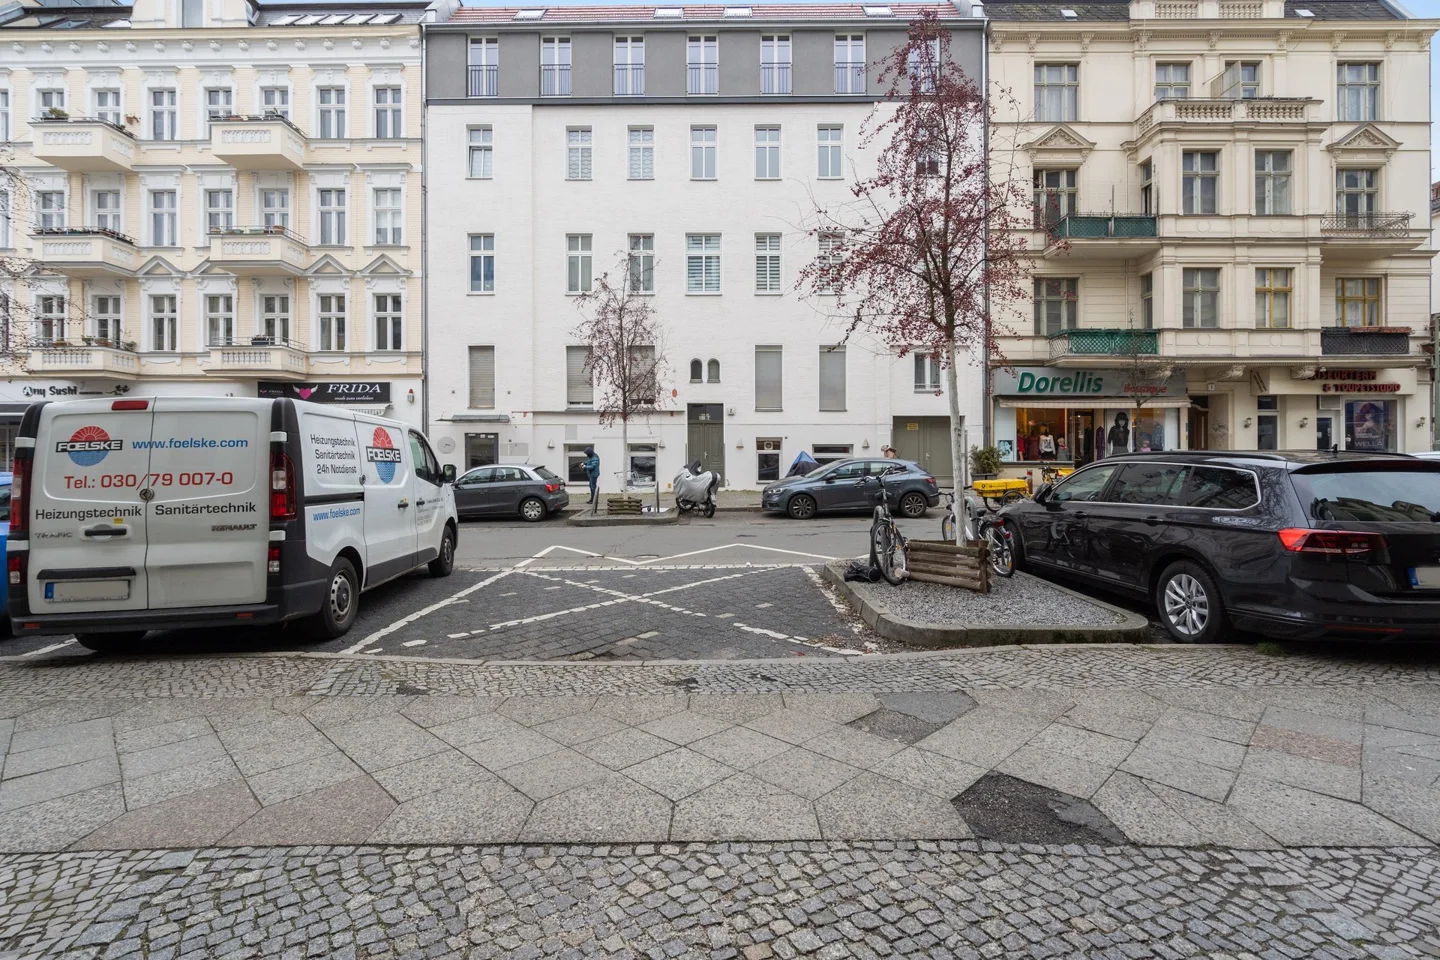 Vermietete Investmentoption nahe der Schlossstraße